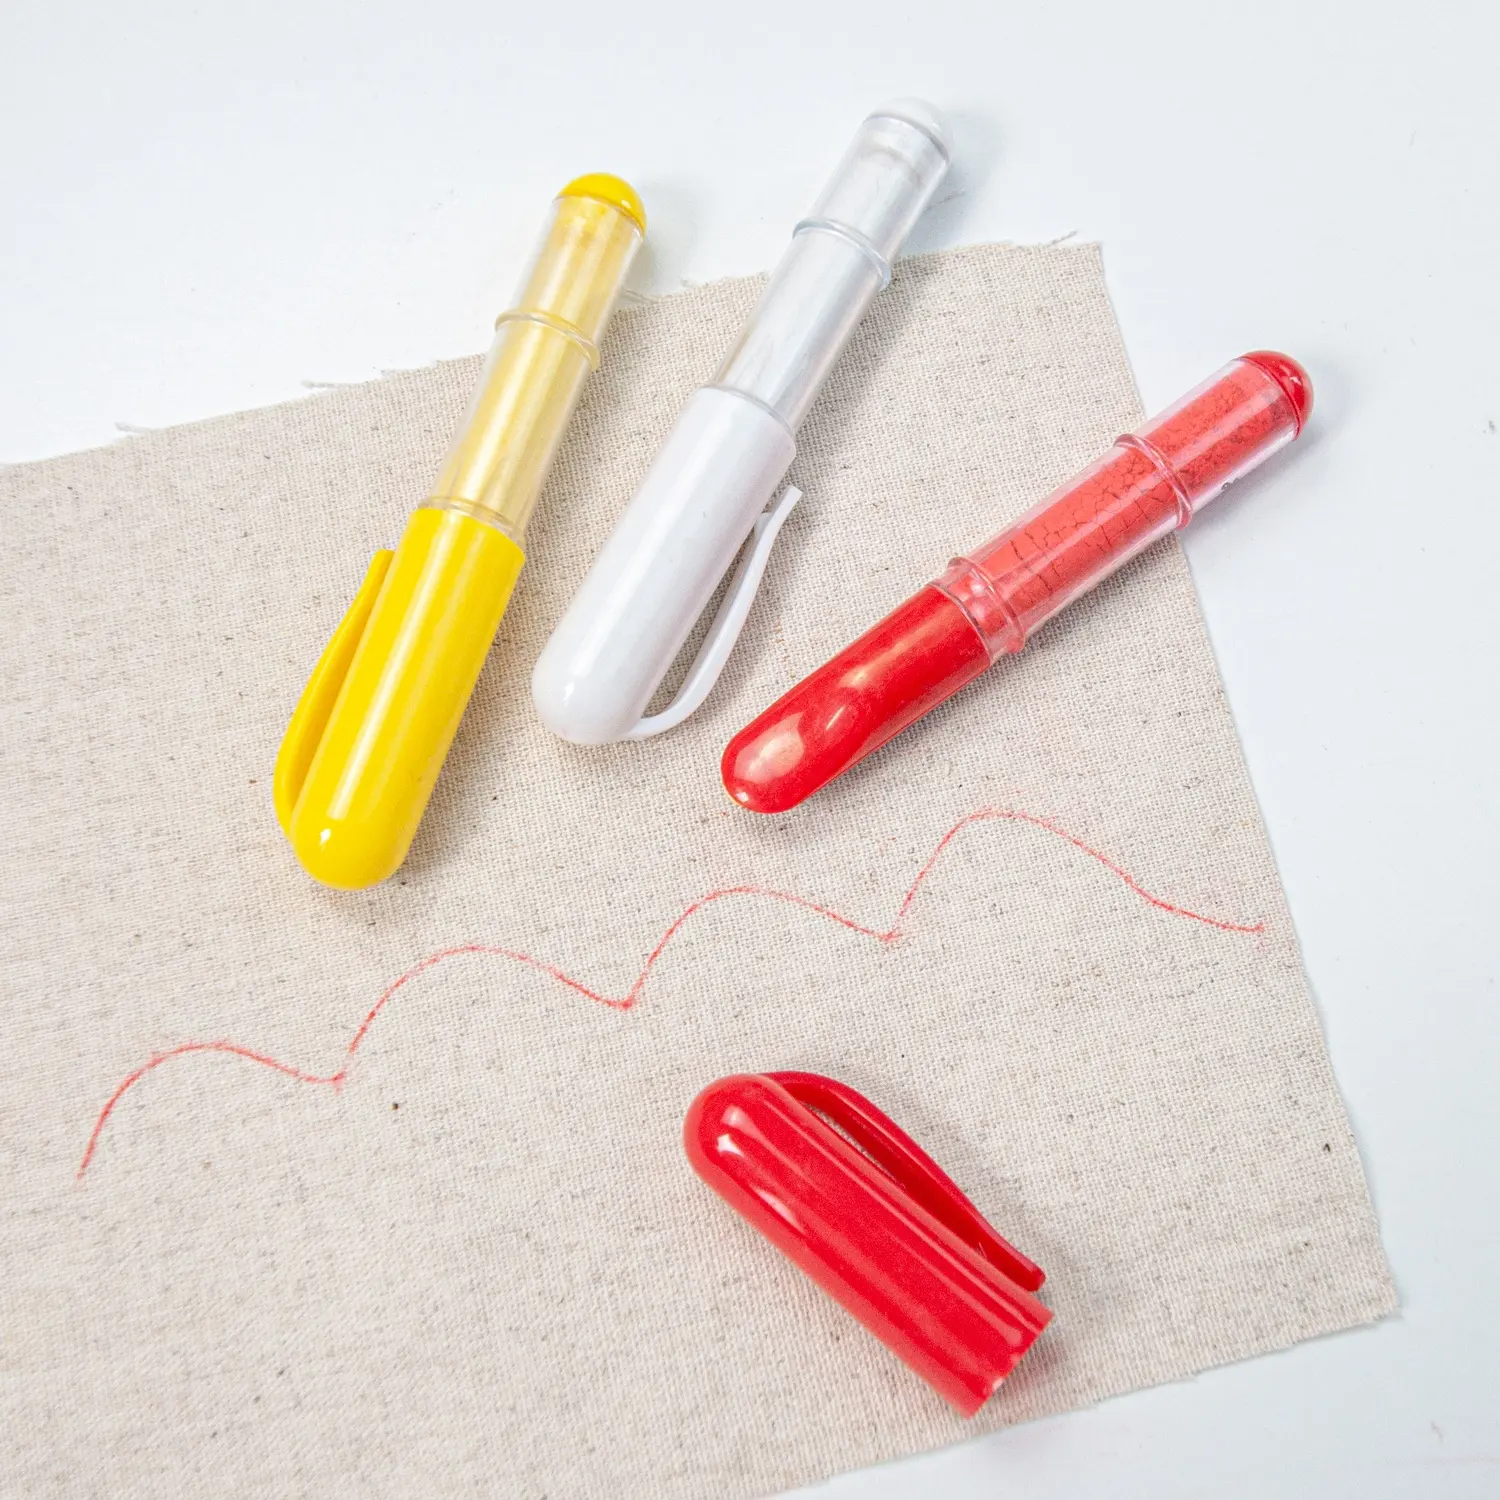 ปากกาชอล์กเขียนผ้าสำหรับเย็บผ้าควิลท์สร้างเส้นที่สามารถลบออกได้อย่างสม่ำเสมอด้วยวงล้อ